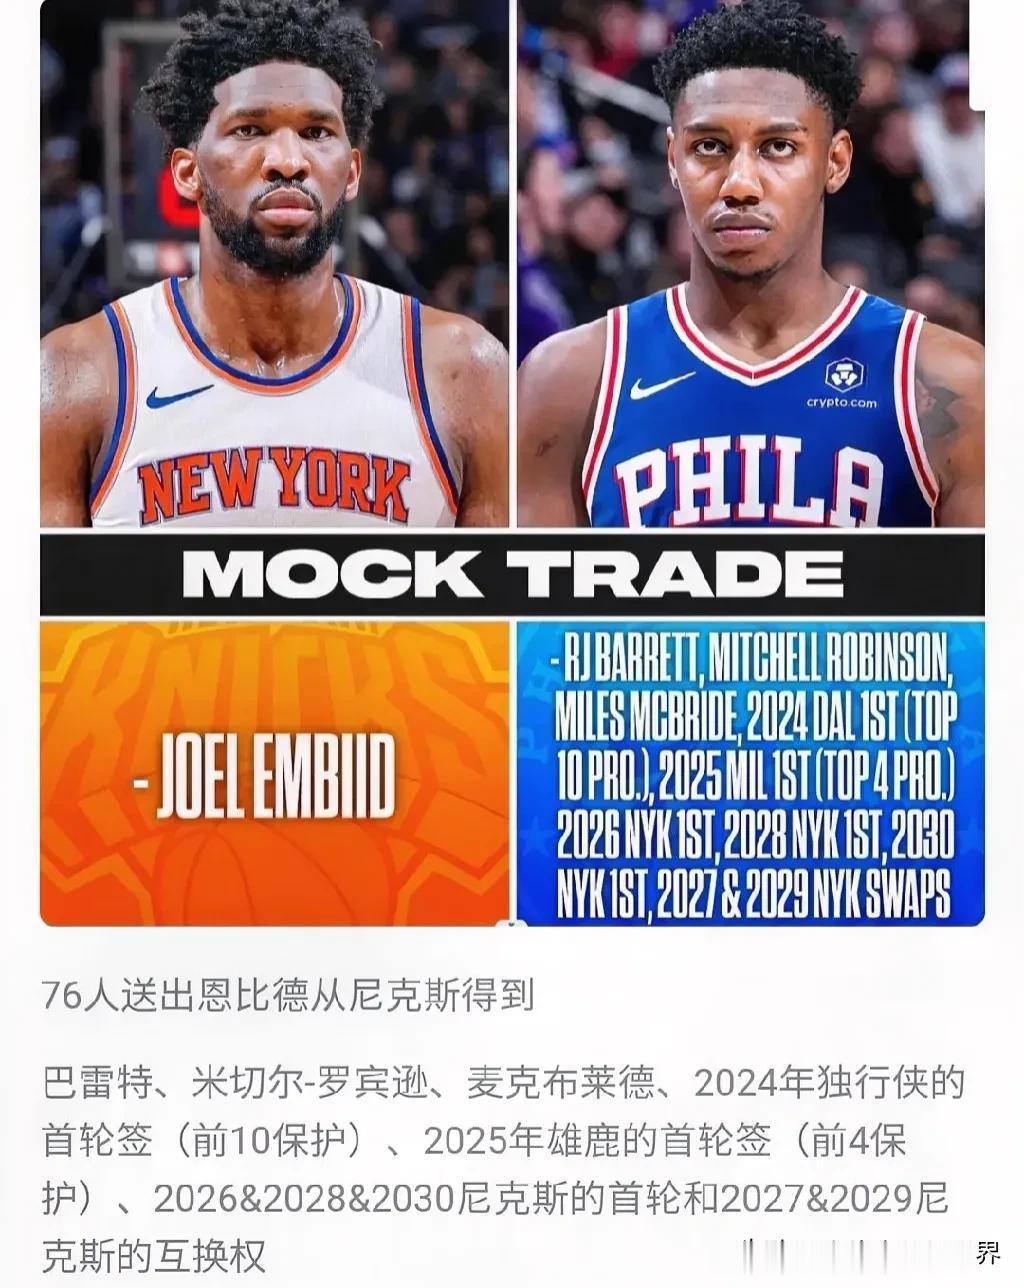 北京时间7月24日美国媒体ESPN提出一笔大胆交易奢想:NBA76人队管理层完全